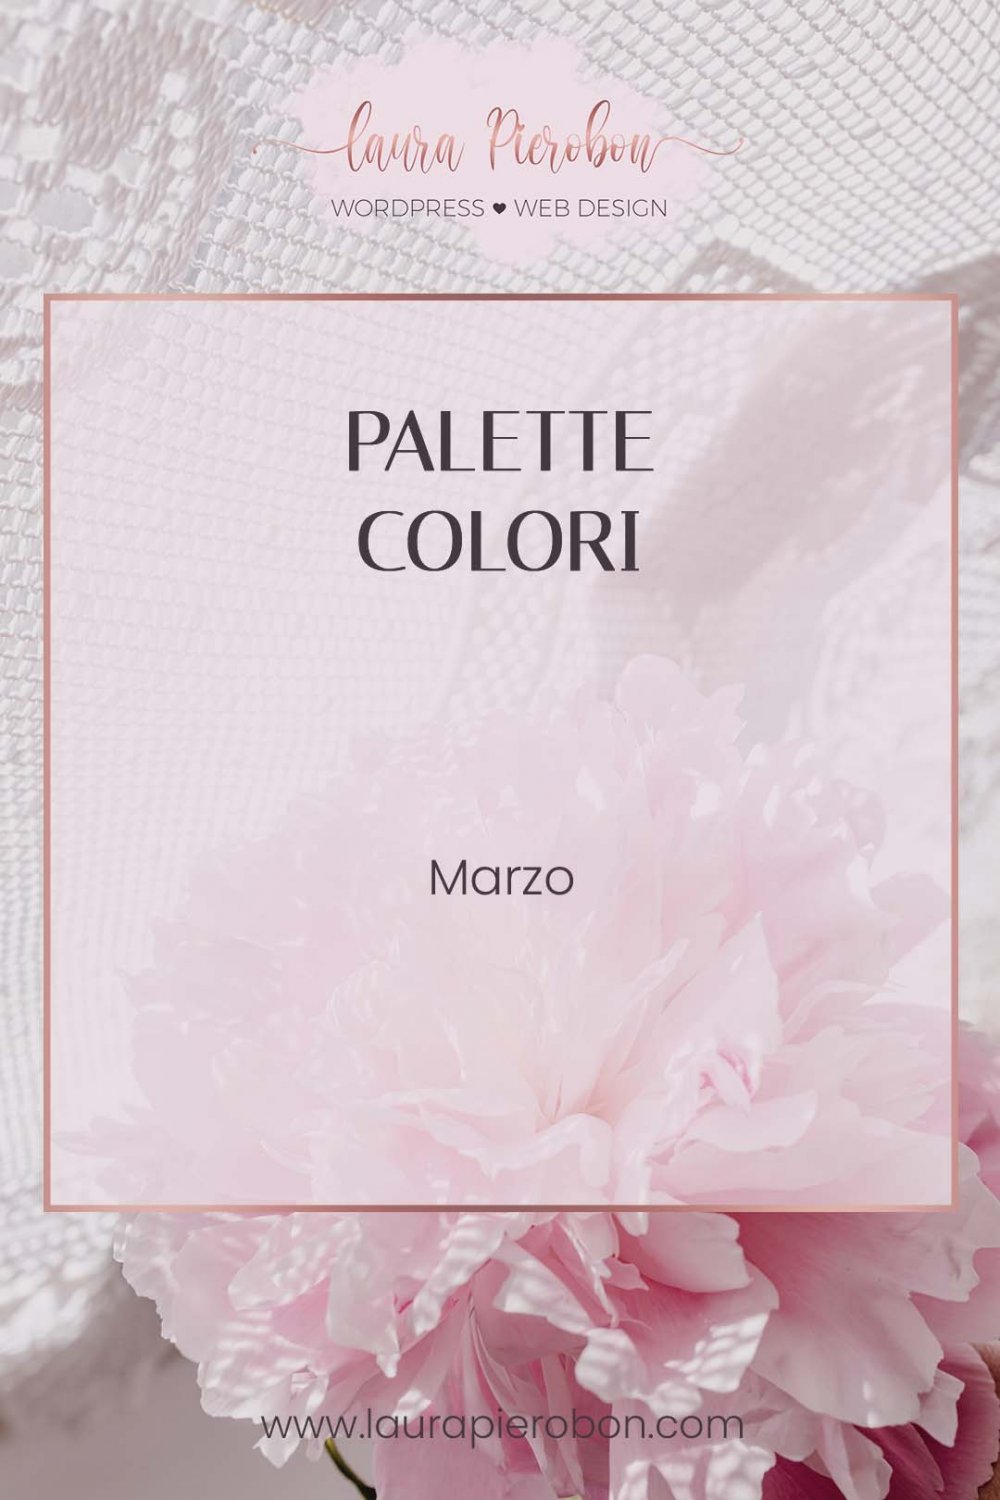 Palette colori di Marzo © Laura Pierobon - WordPress ❤︎ Web Design